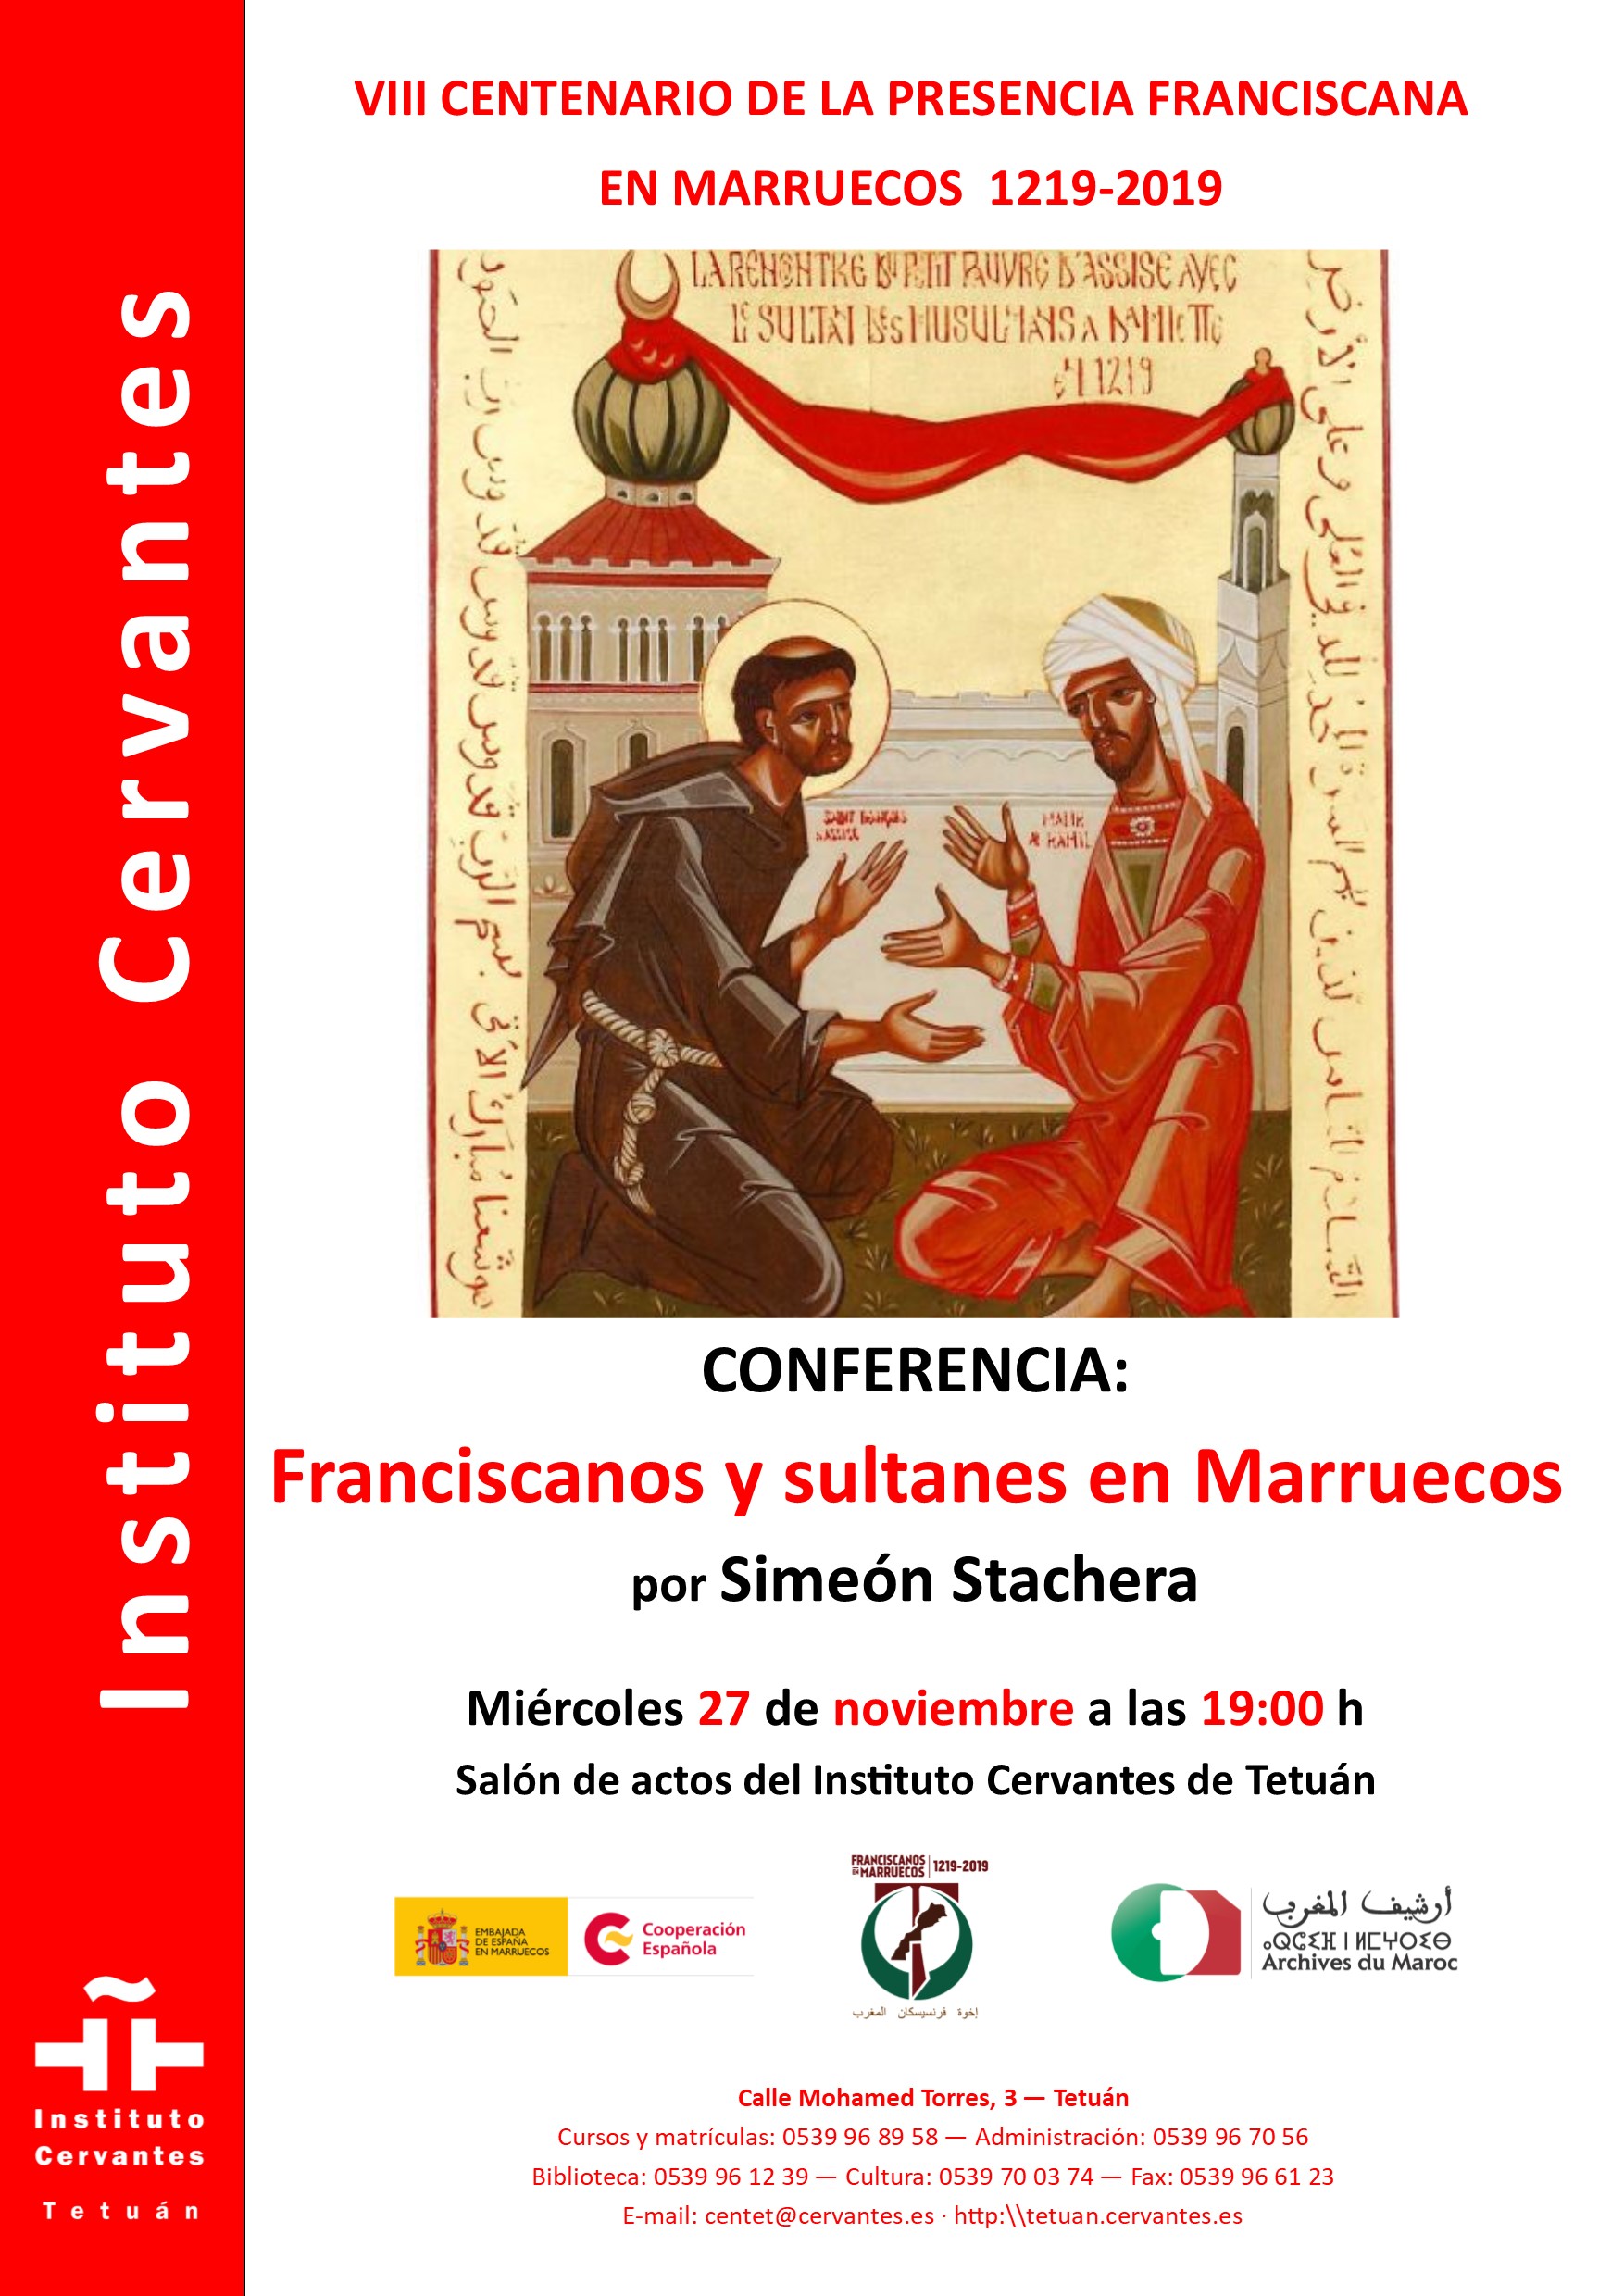 Franciscanos y sultanes en Marruecos